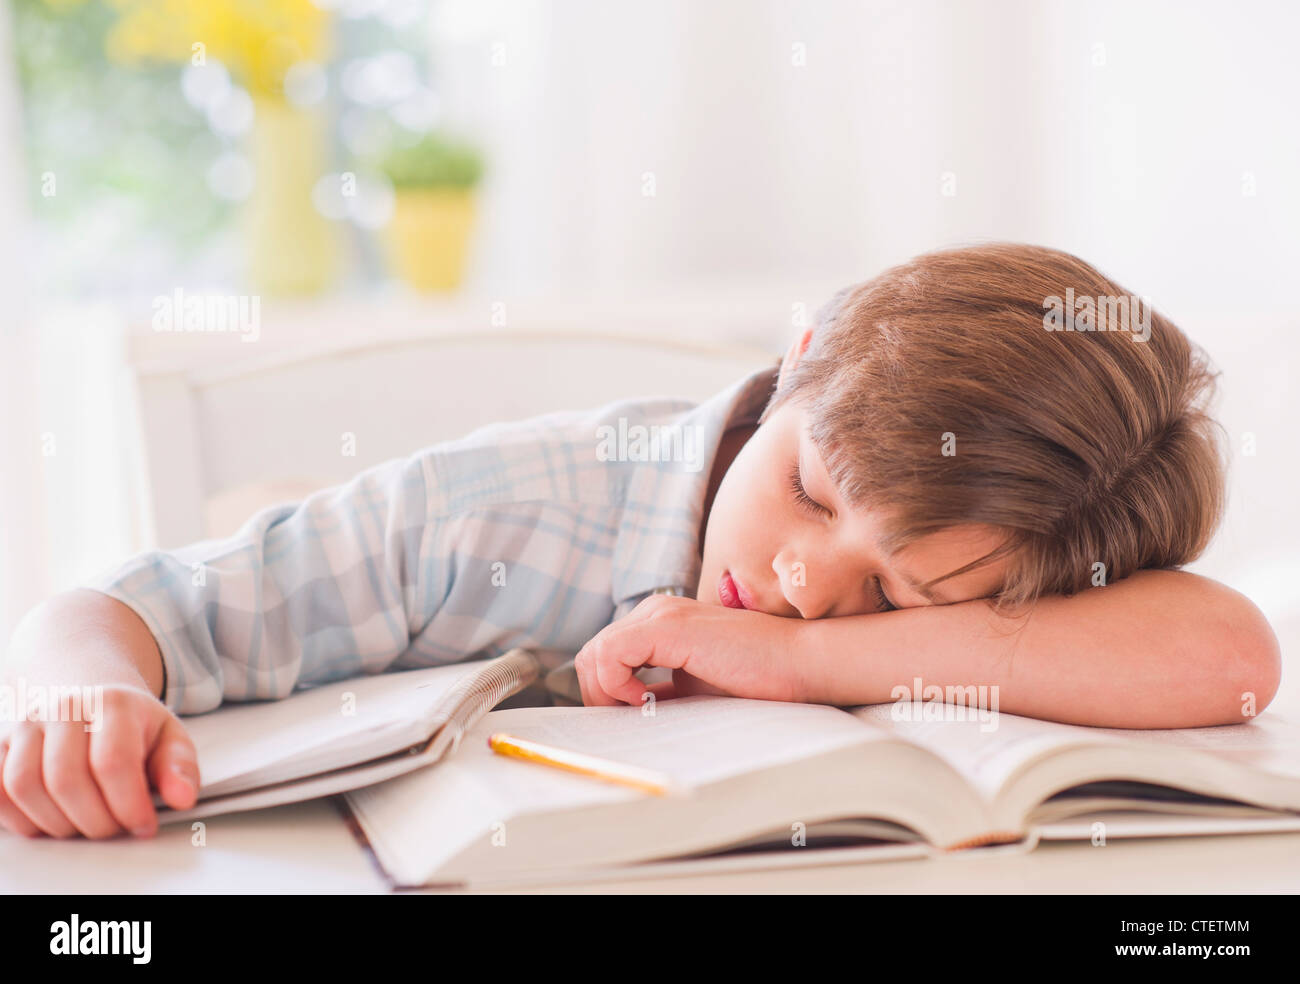 USA, New Jersey, Jersey City, Boy (10-11 ans) dorment sur des livres tout  en faisant leurs devoirs Photo Stock - Alamy